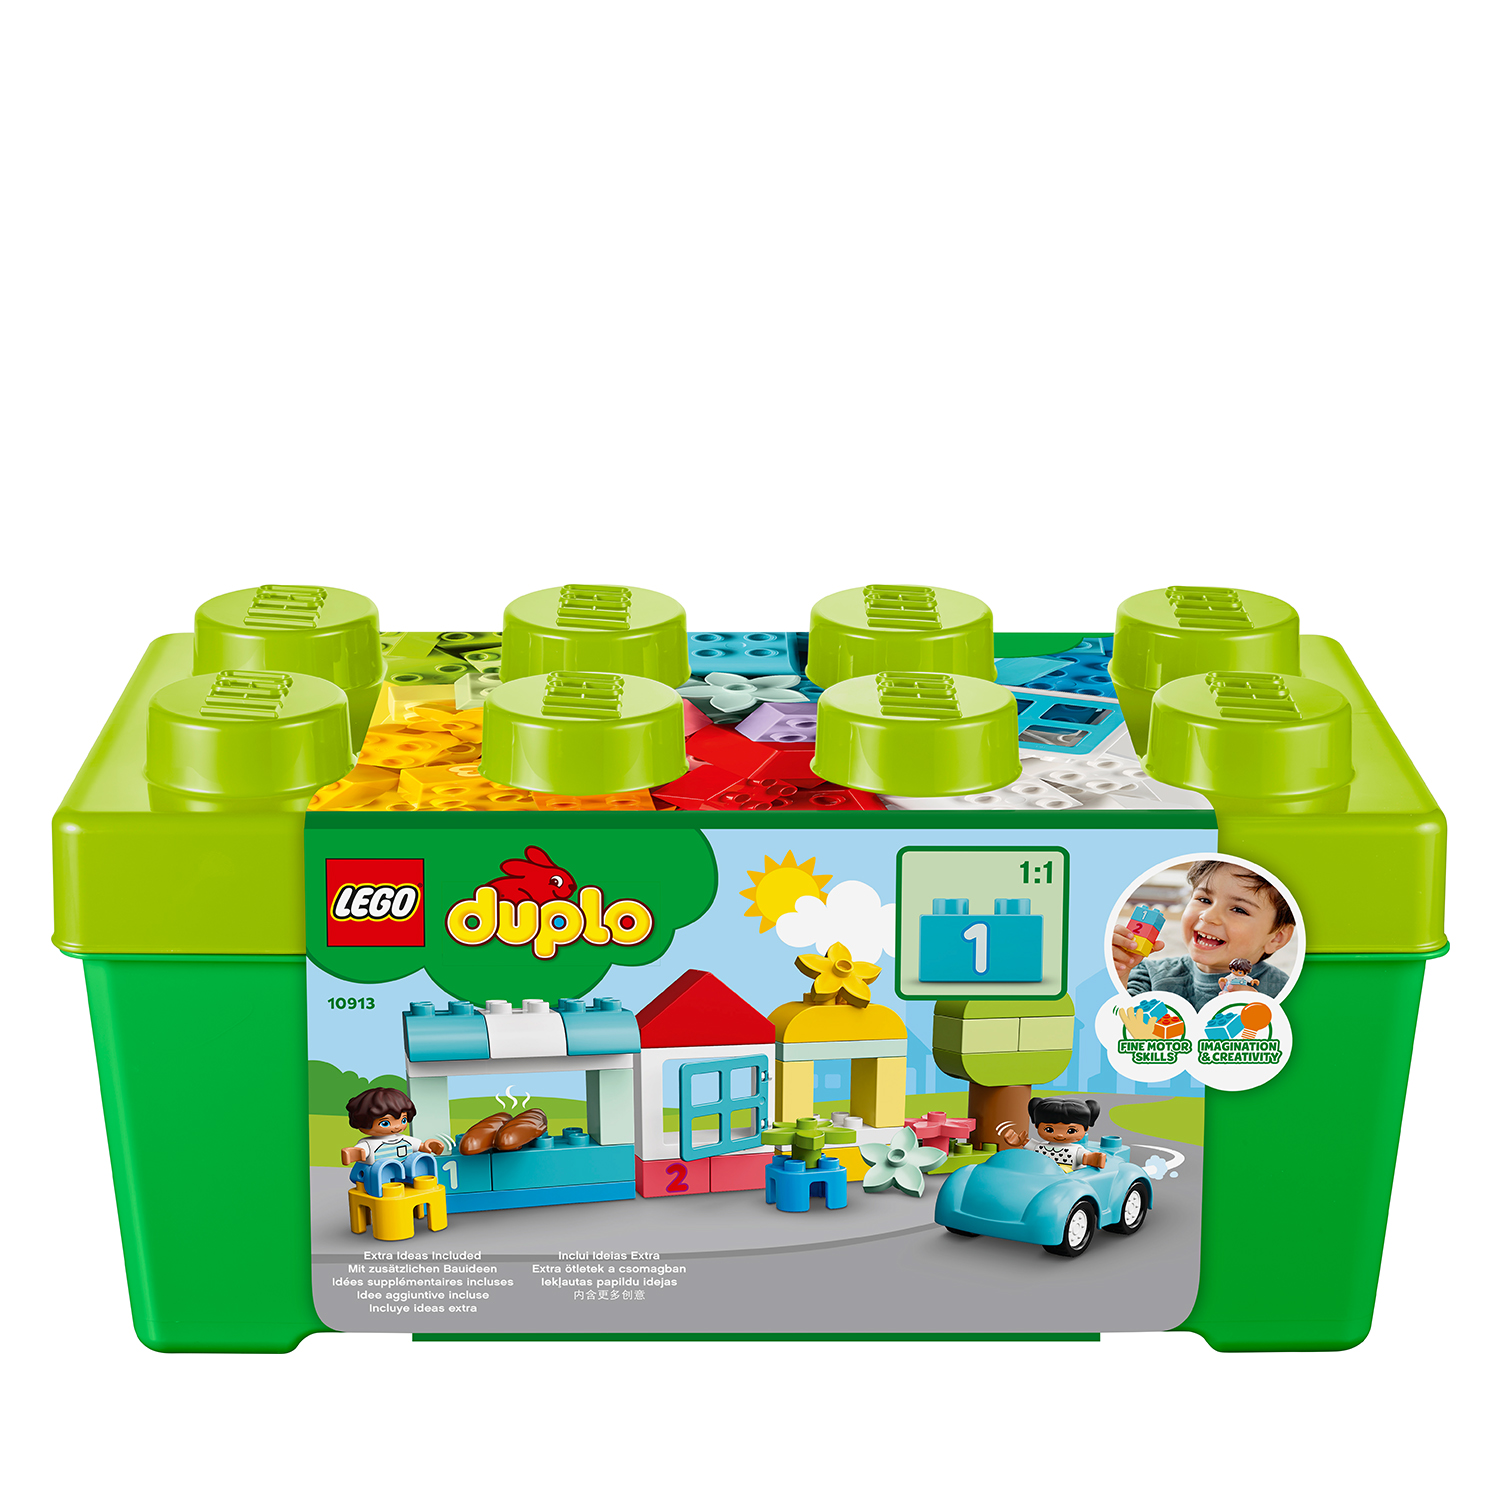 Lego duplo contenitore di mattoncini - 10913 - LEGO DUPLO, Lego